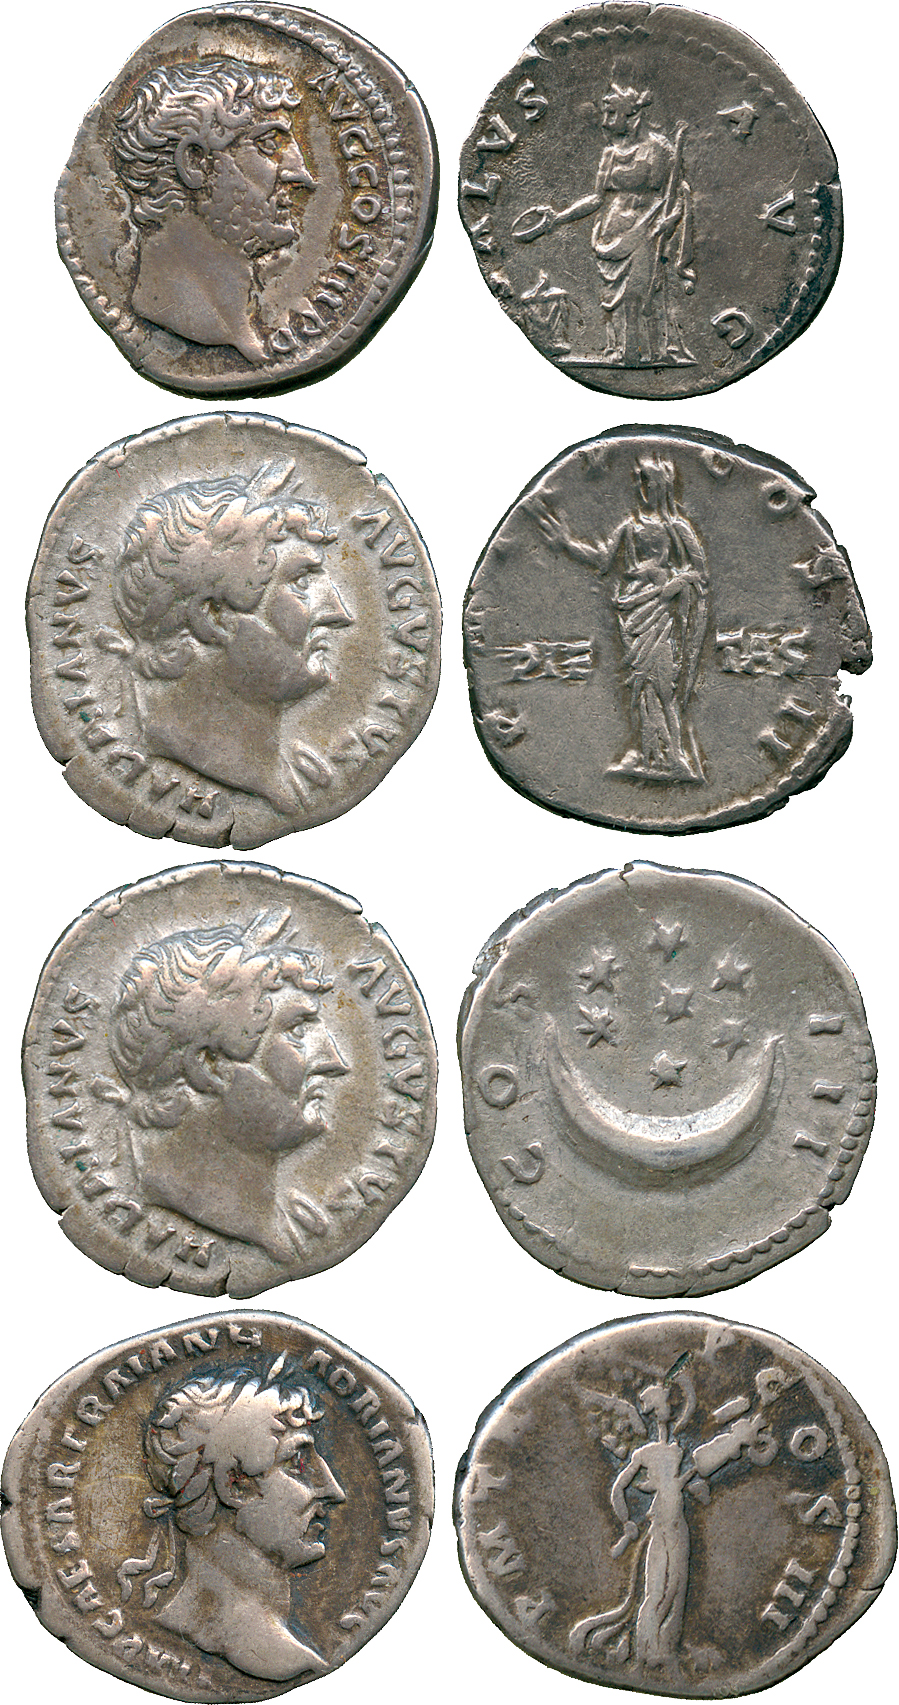 ANCIENT COINS, ROMAN COINS, Hadrian (AD 117-138), Silver Denarii (4), reverses include Pietas,